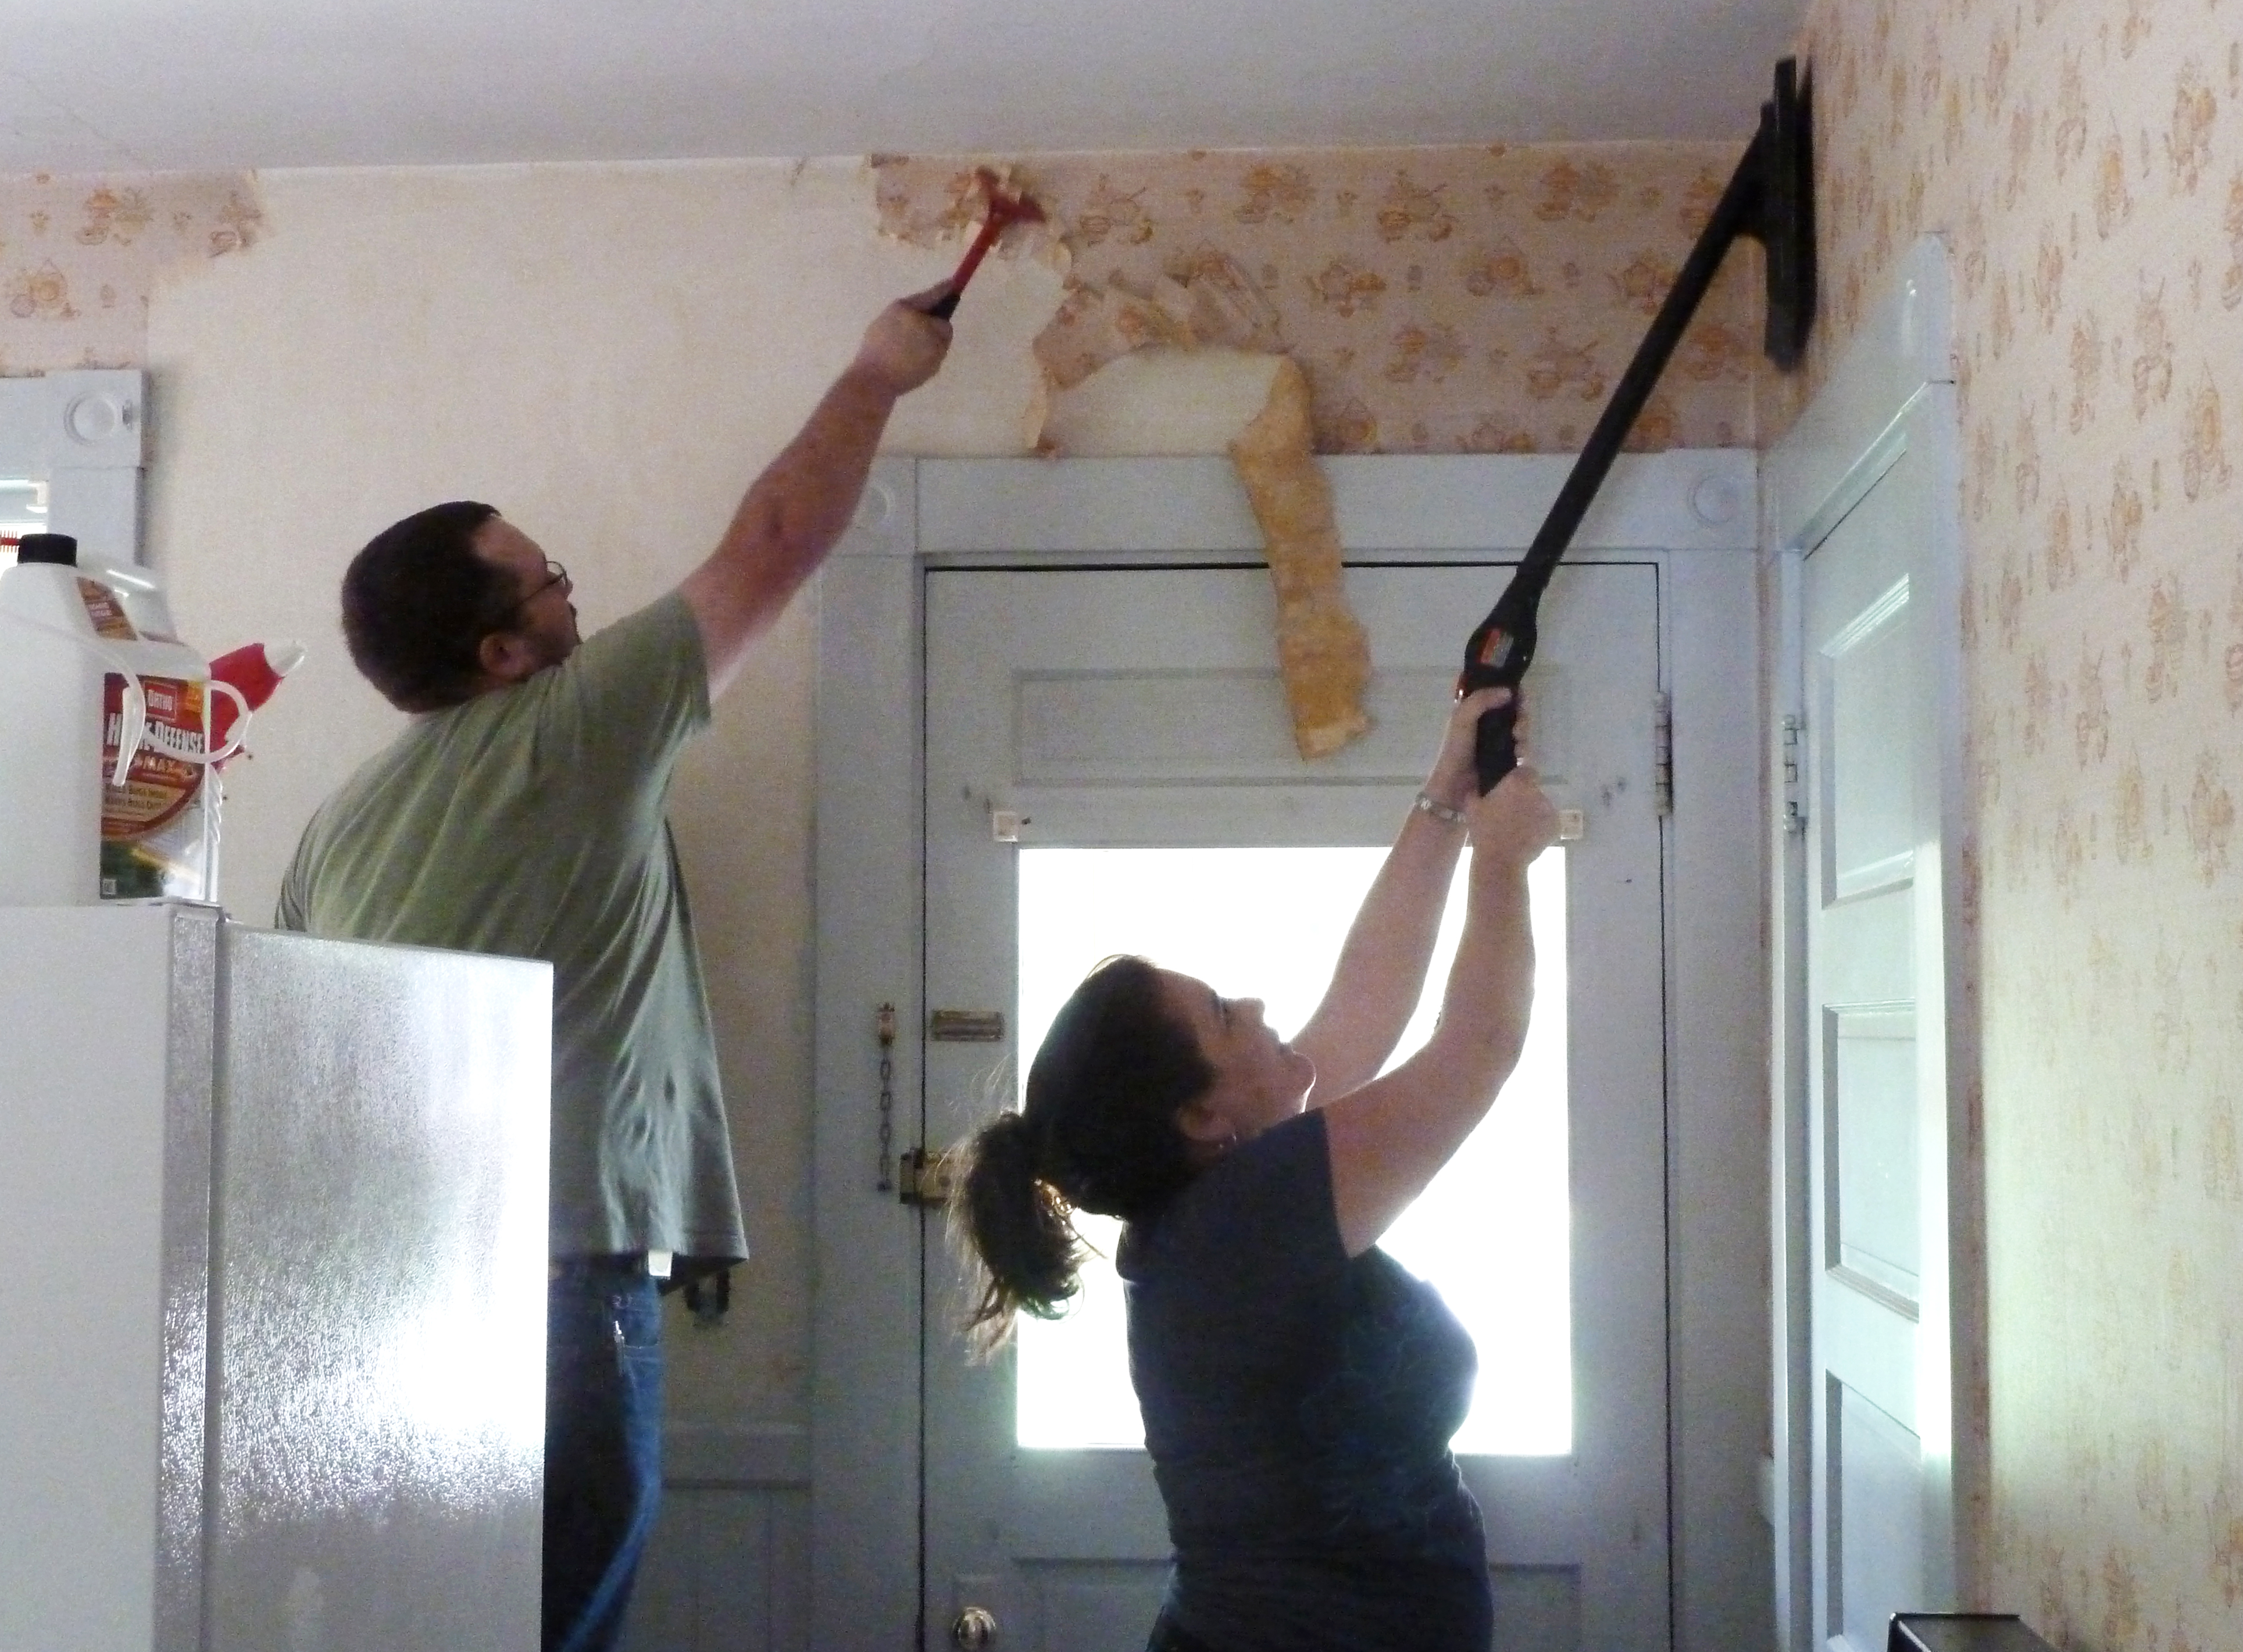 Как сделать ремонт в квартире правильно: С чего начать ремонт в доме и квартире – пошаговая инструкция